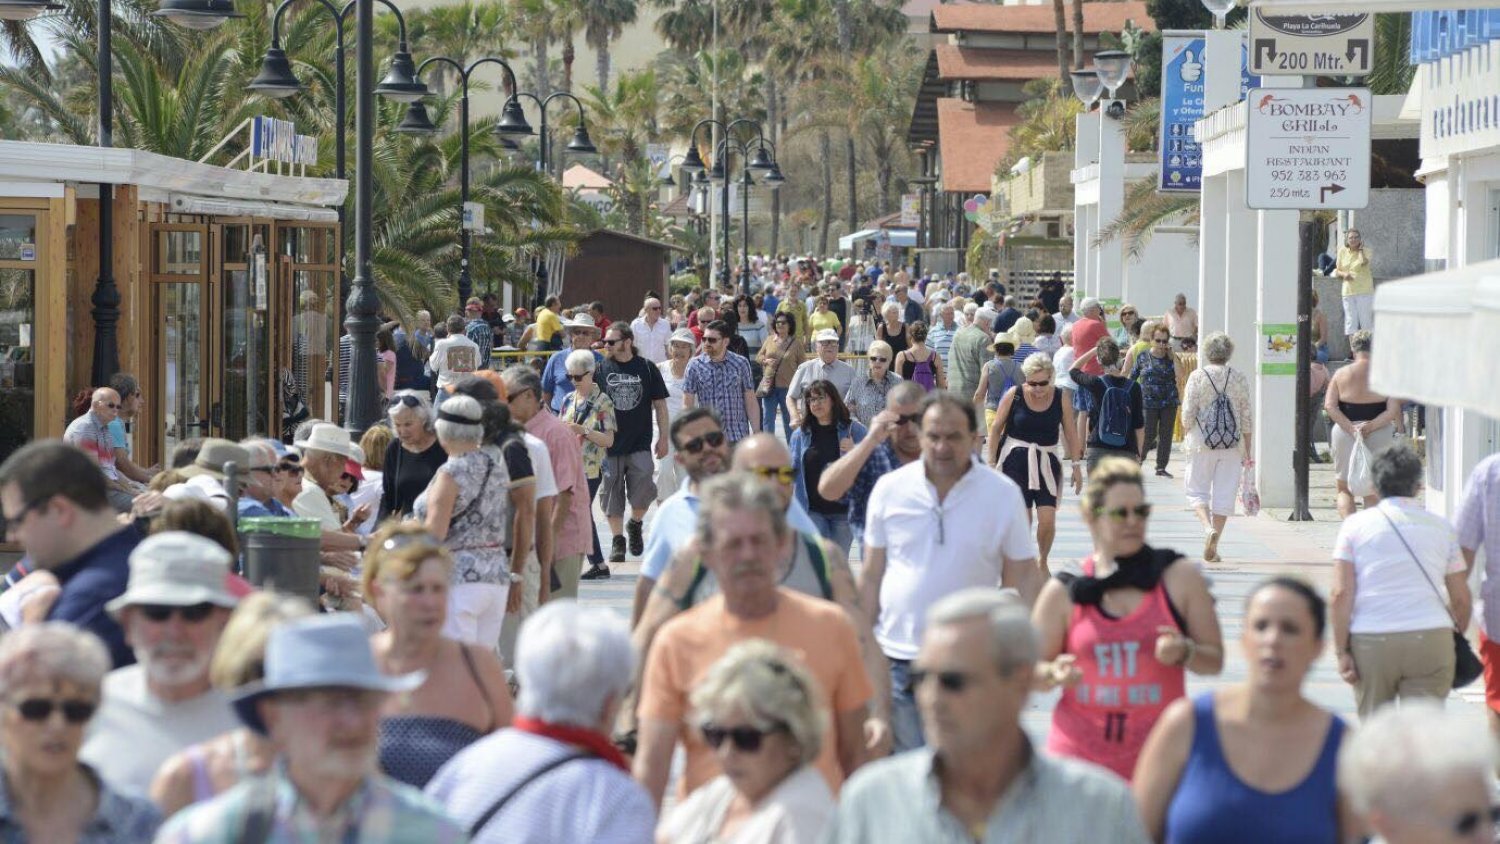 Torremolinos reafirma su liderazgo turístico en la Costa del Sol con casi medio millón de estancias en hoteles